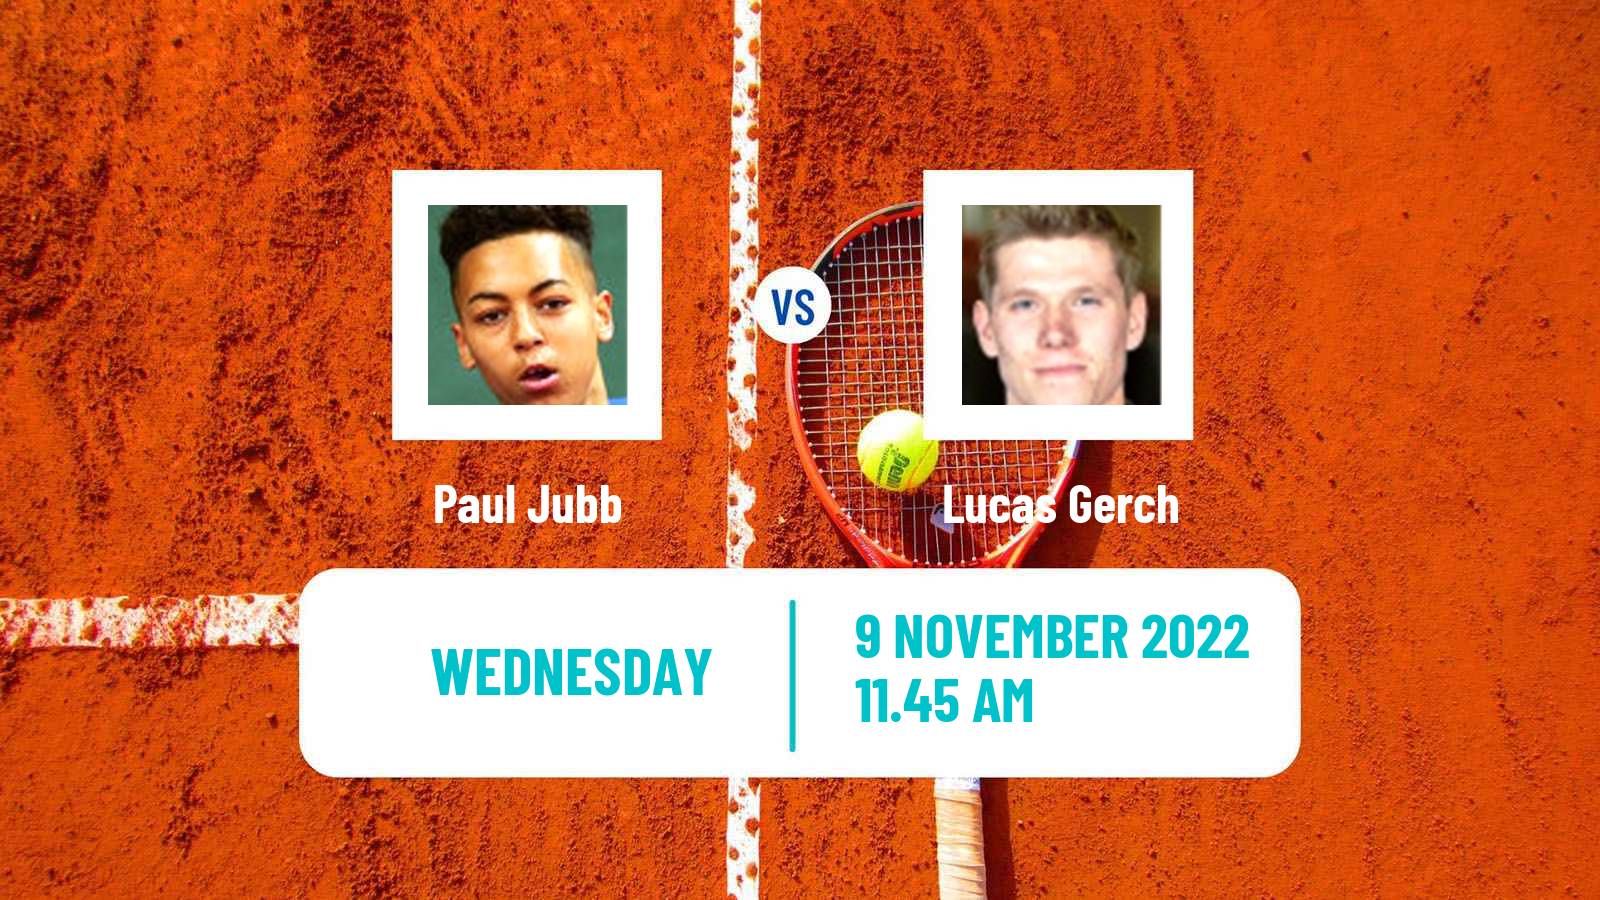 Tennis ATP Challenger Paul Jubb - Lucas Gerch